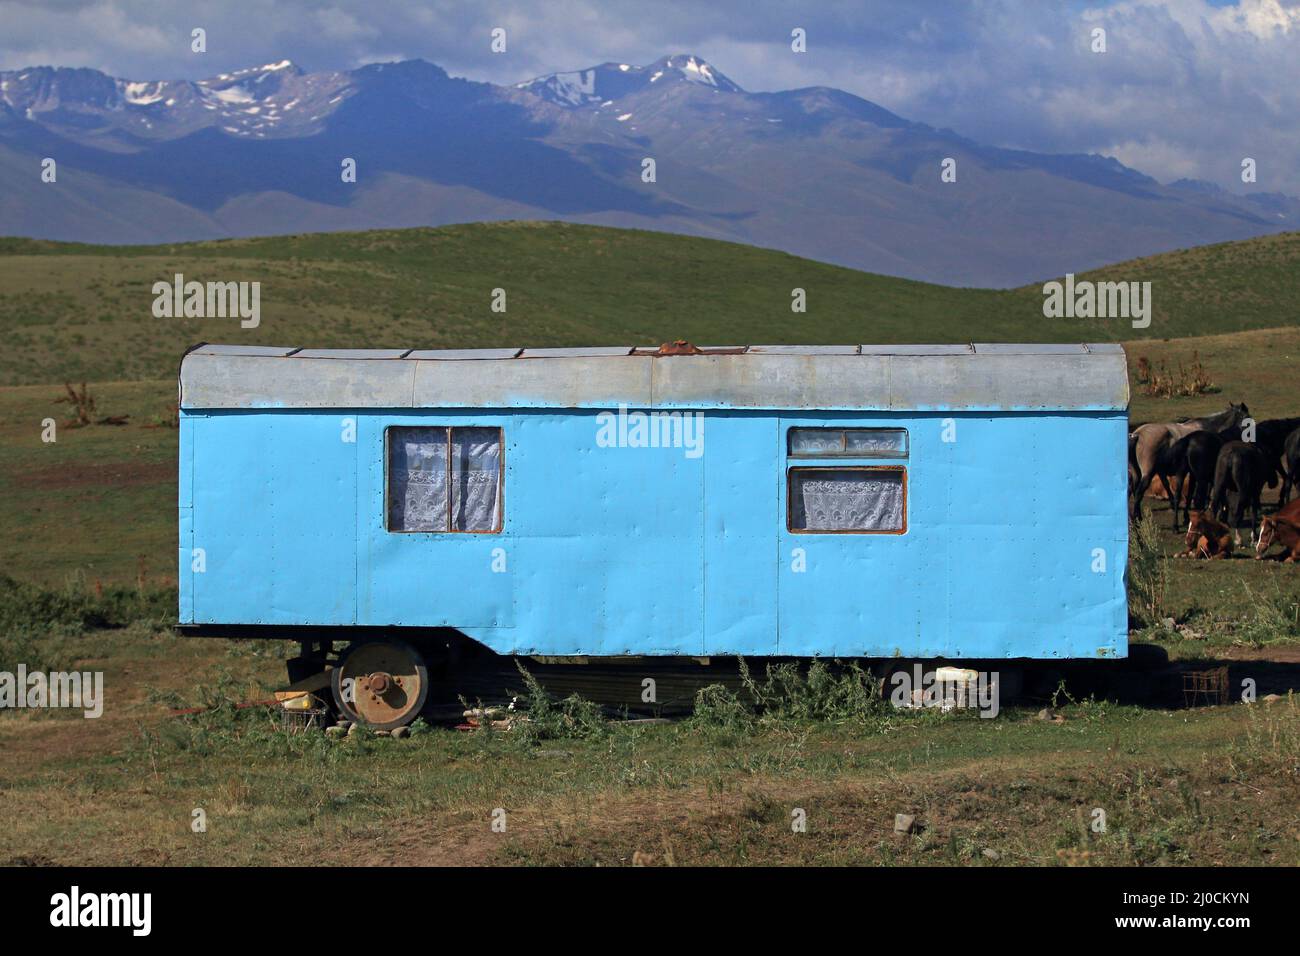 Casa móvil de pastores en el centro de Kirguistán Foto de stock